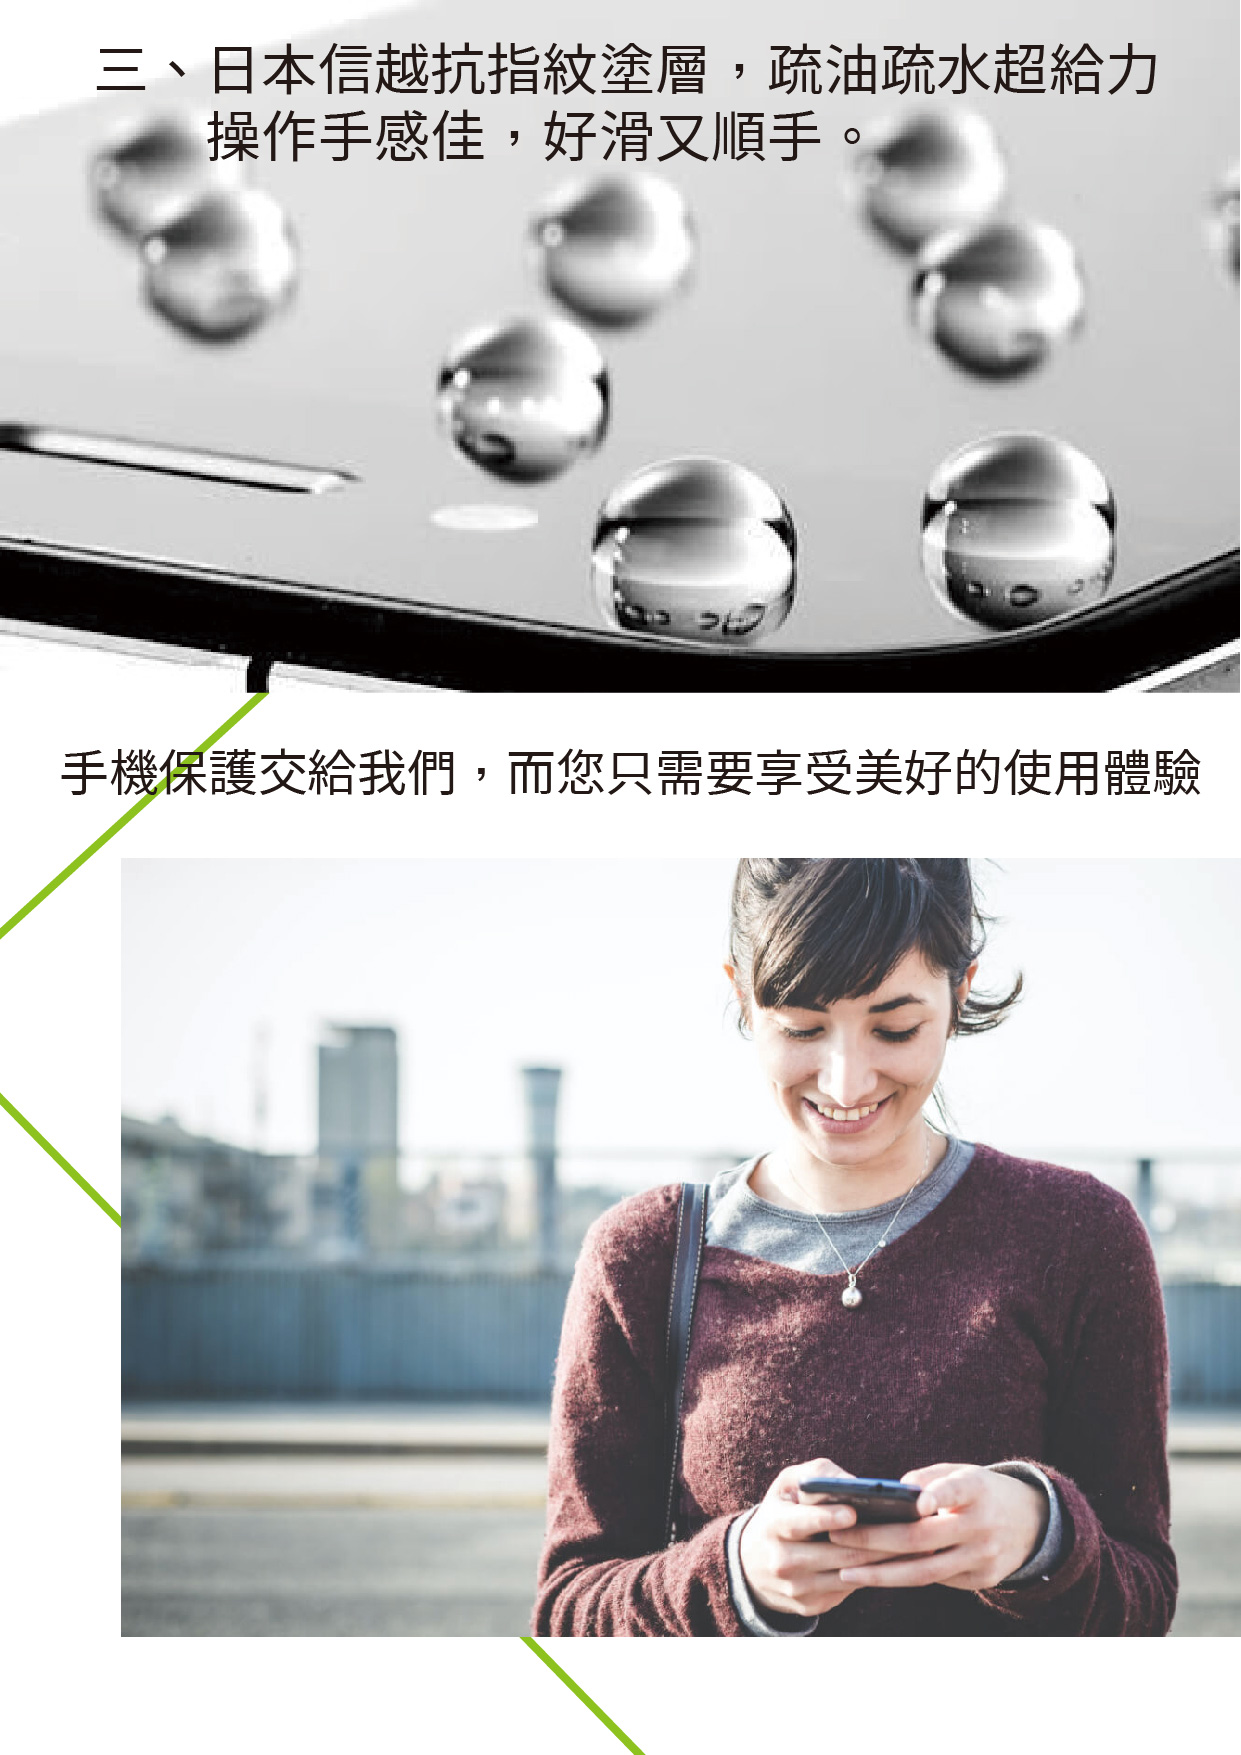 【GOR保護貼】Apple IPhone6 6s 6sPlus 9H滿版鋼化玻璃